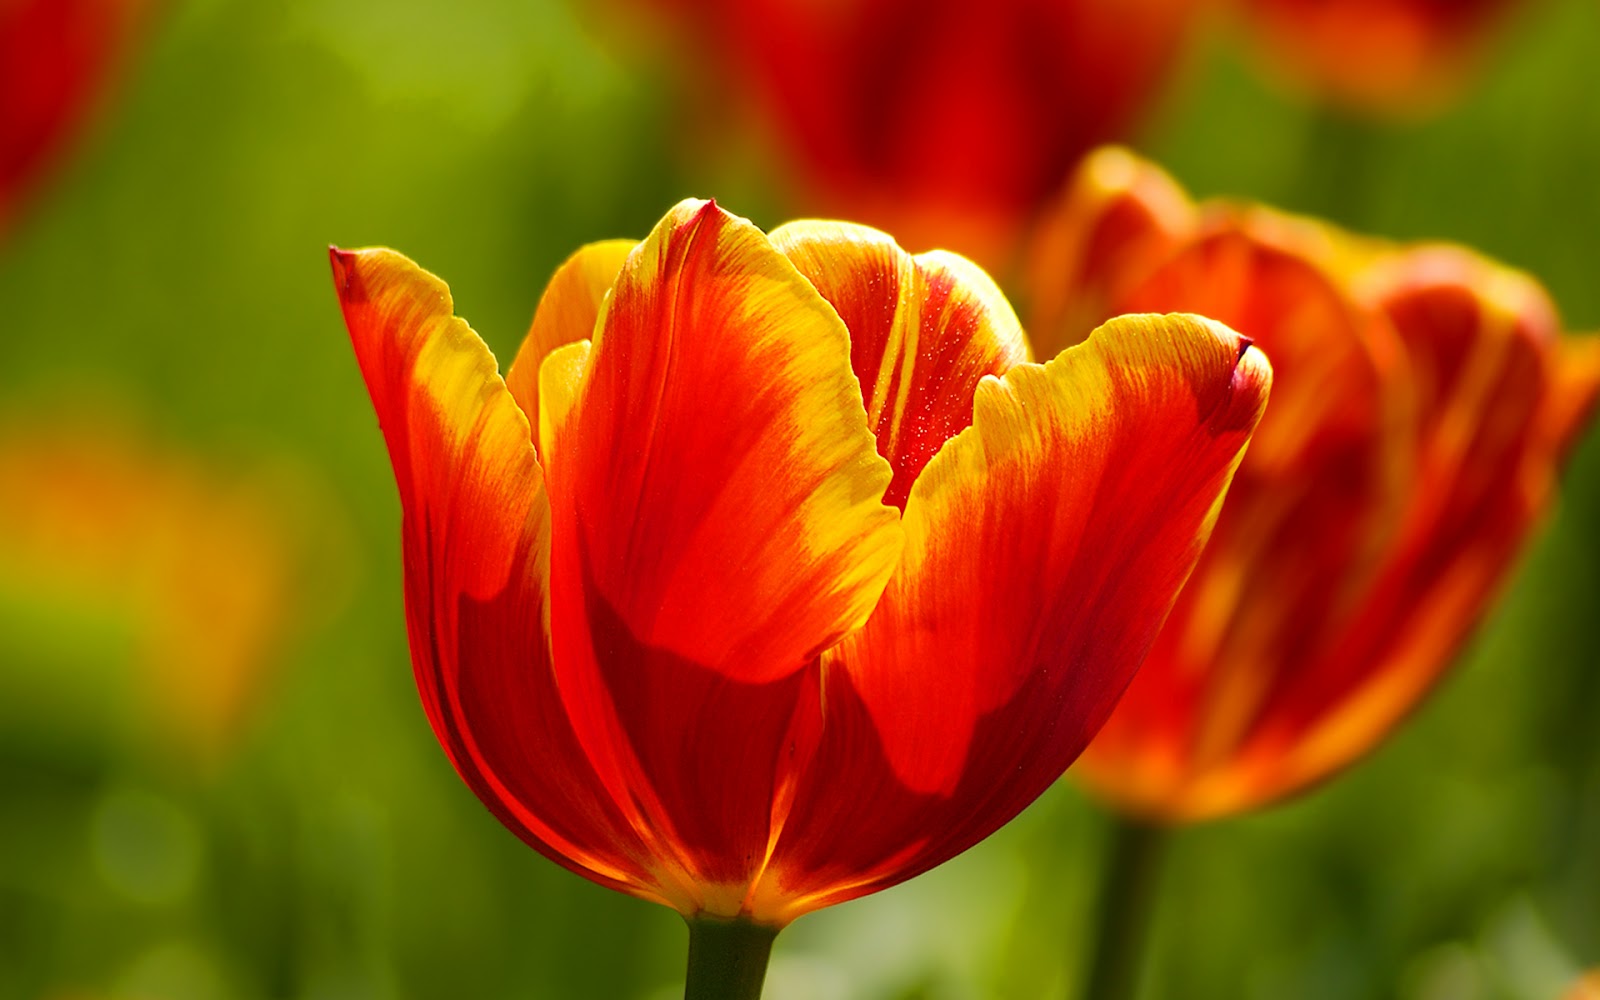 tulips flowers wallpapers,flower,flowering plant,petal,tulip,red